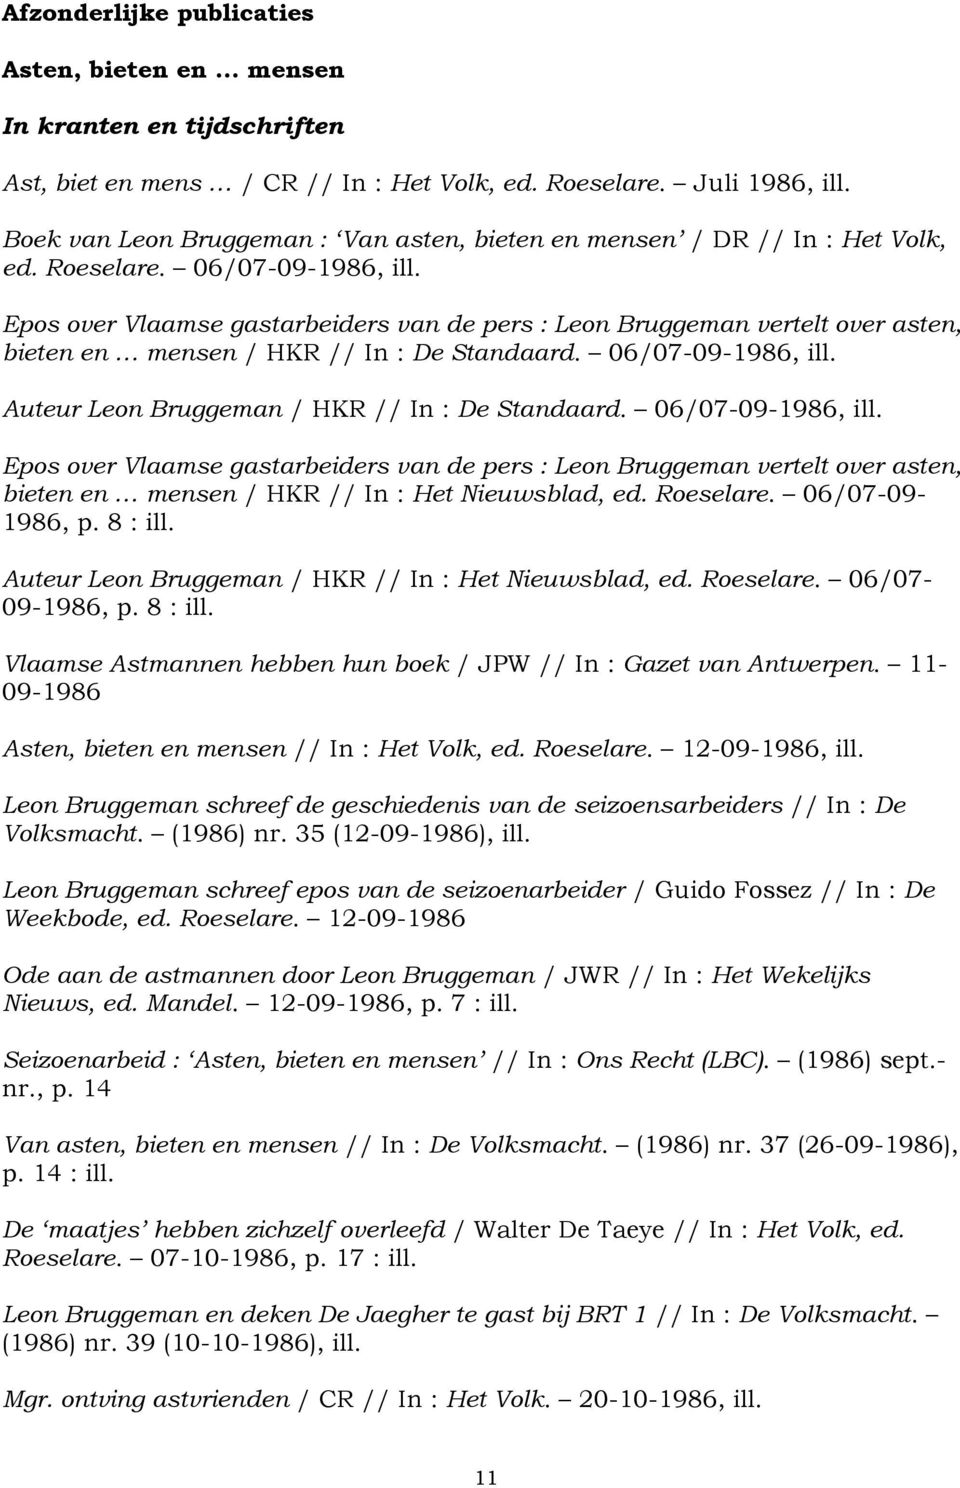 Epos over Vlaamse gastarbeiders van de pers : Leon Bruggeman vertelt over asten, bieten en mensen / HKR // In : De Standaard. 06/07-09-1986, ill. Auteur Leon Bruggeman / HKR // In : De Standaard.